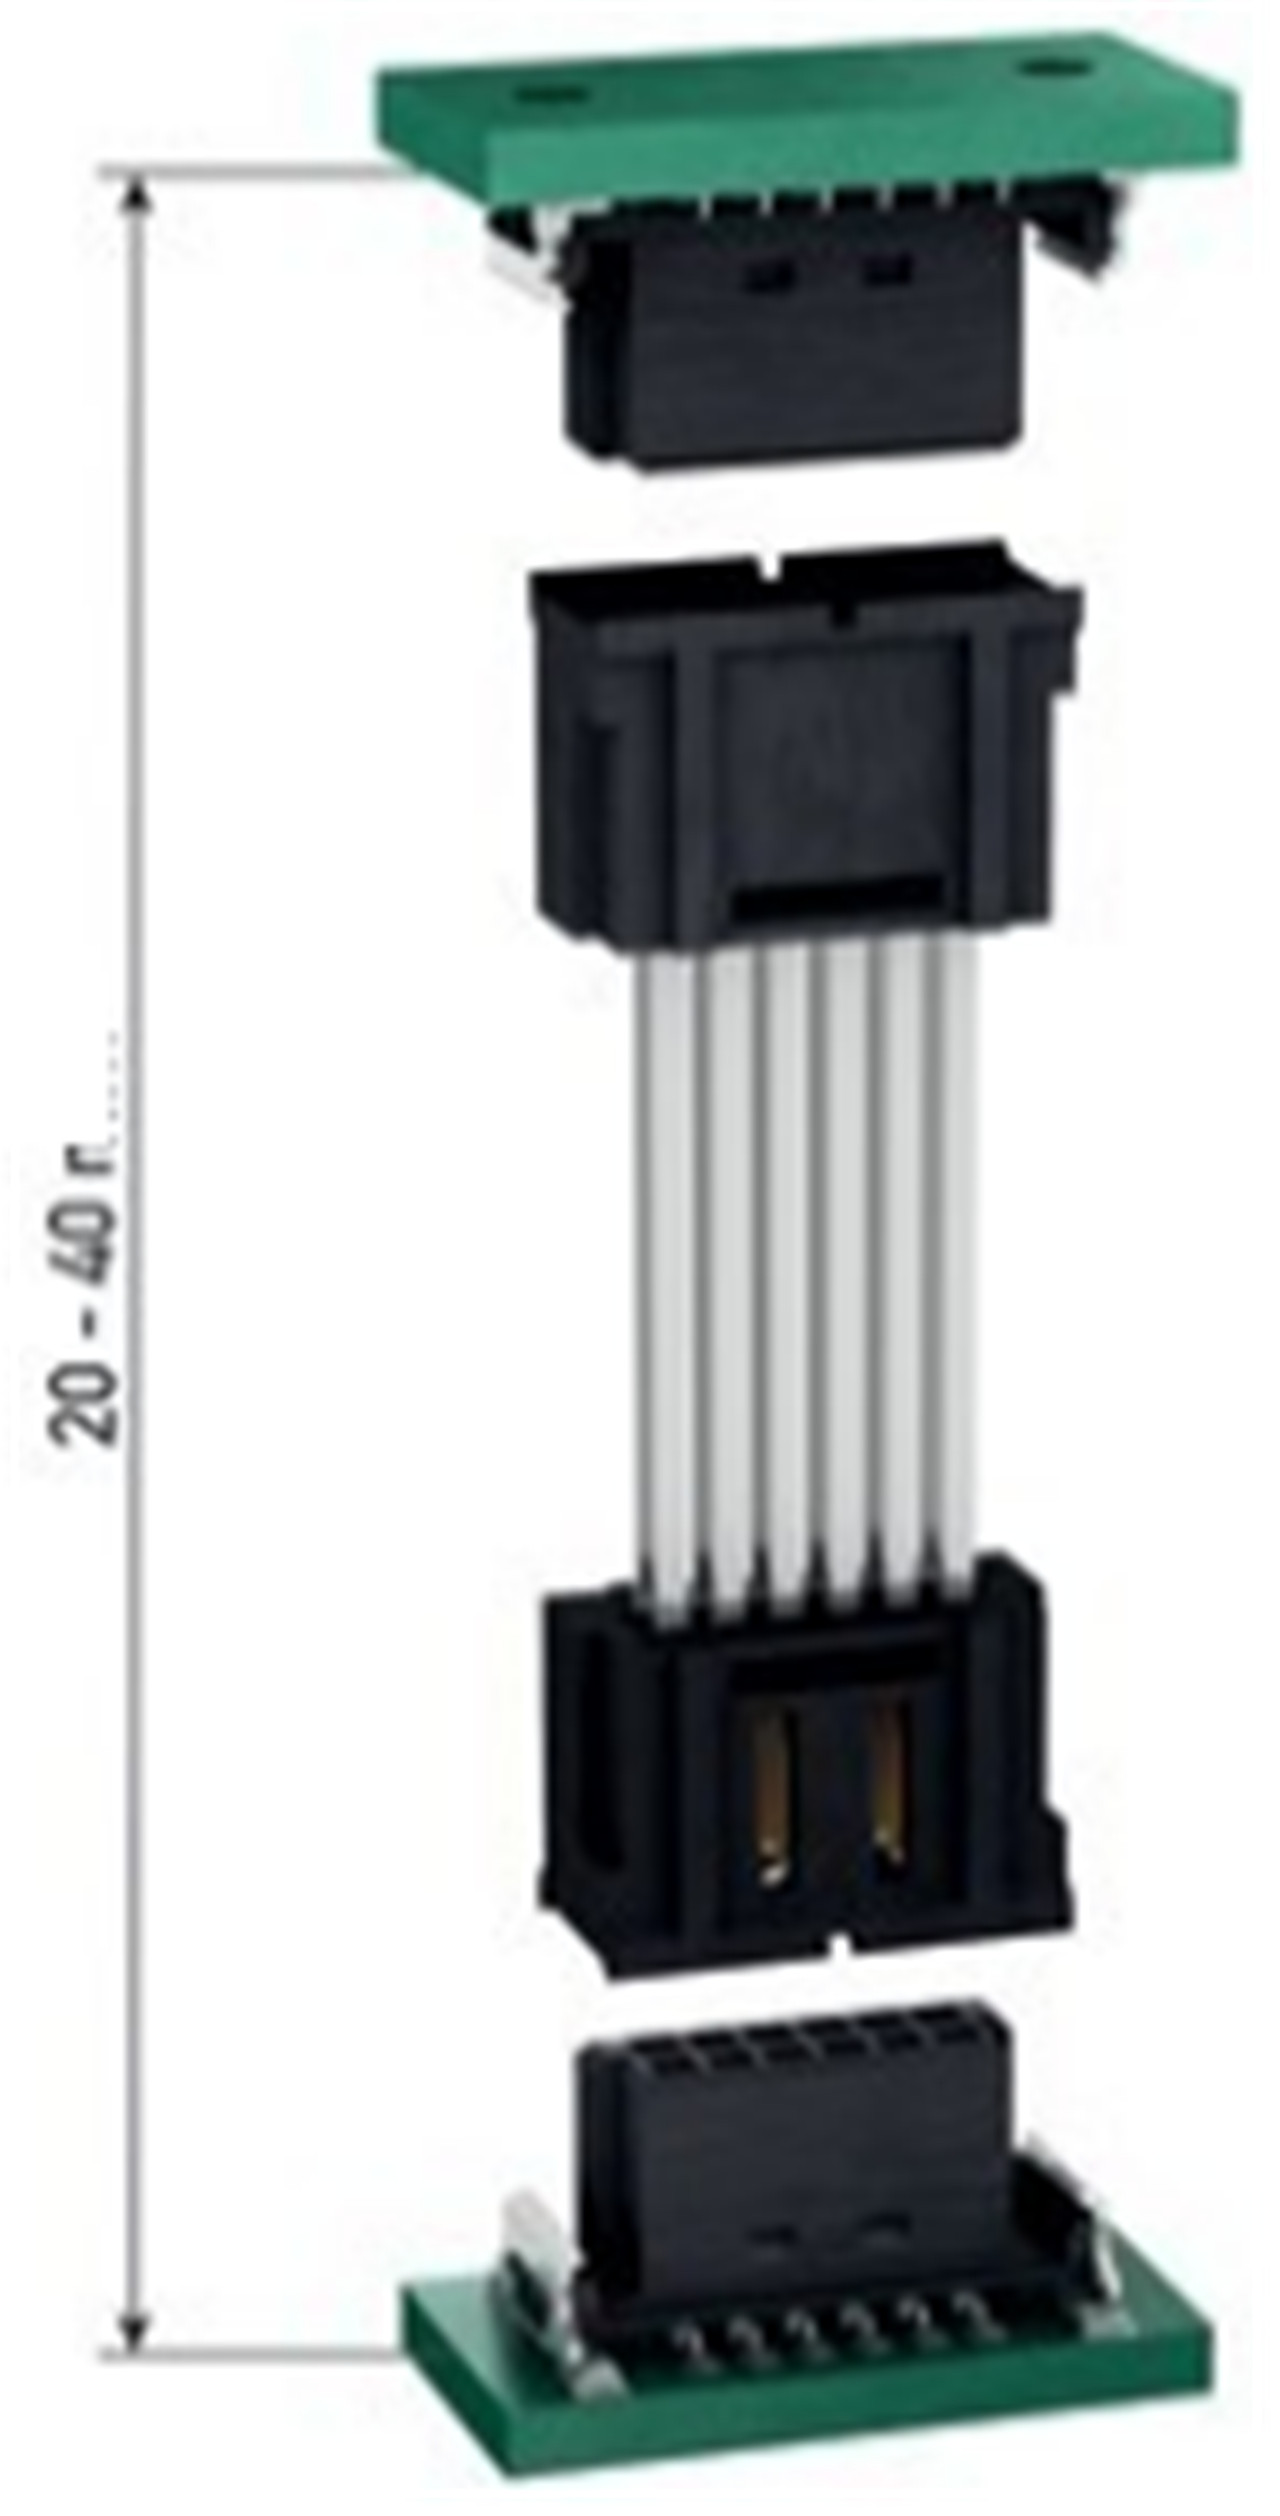 CONECTOR SMC DE 1,27 mm (14)